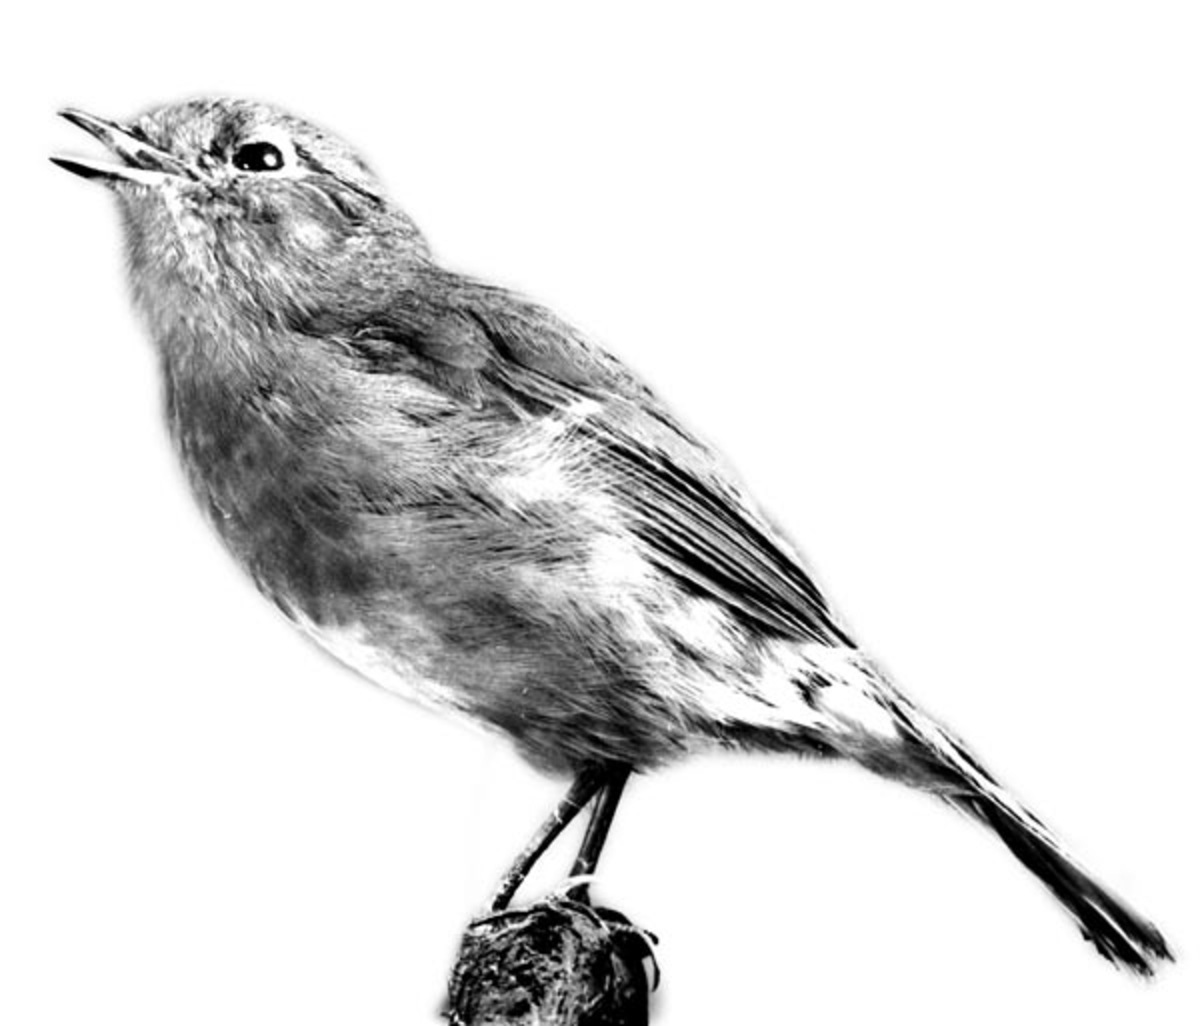 Orden: Spurvefugler, trostefamilien. 
Rødstrupen er utstoppet i sittende stilling med åpent nebb og hodet vendt mot venstre. 
